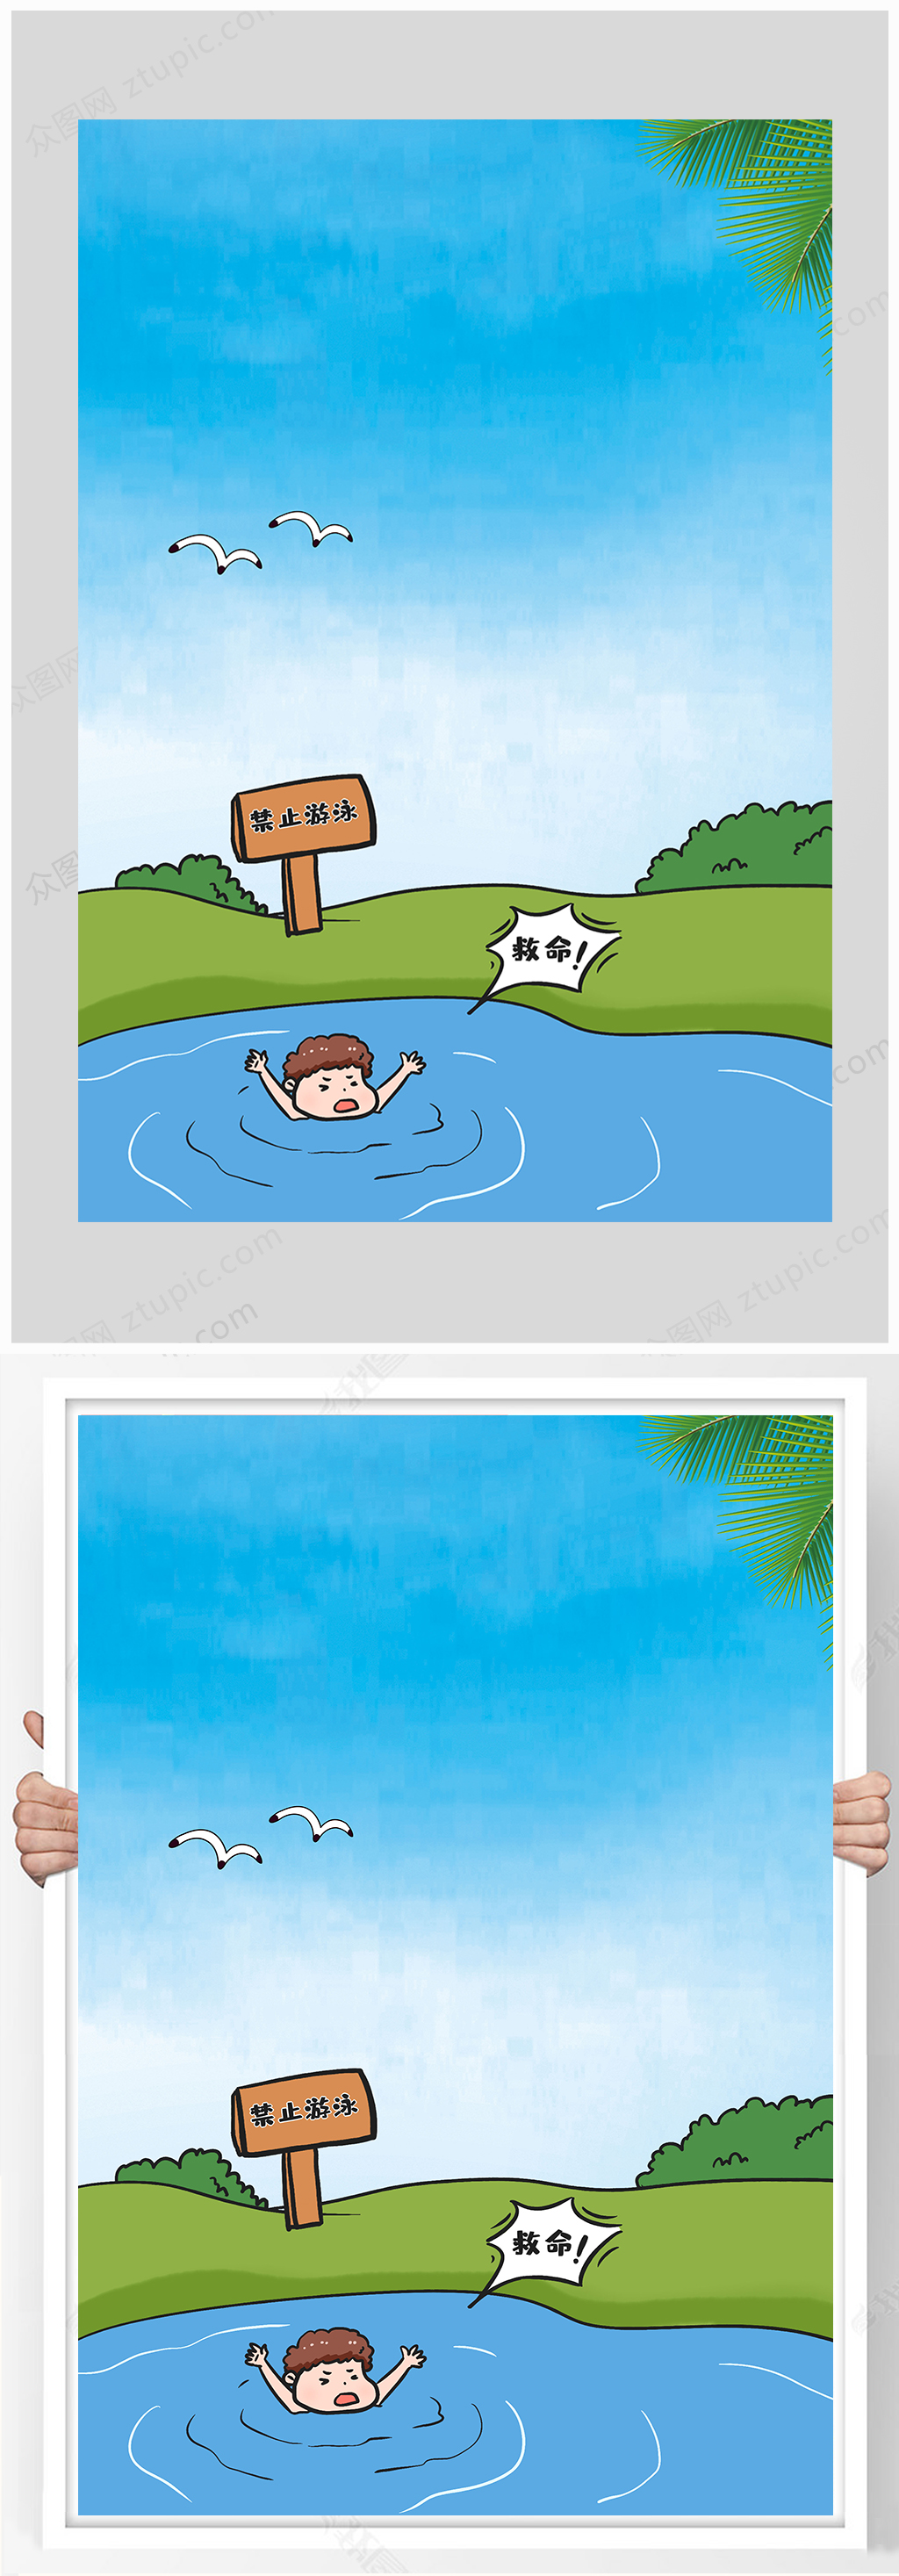 防溺水背景图无字图片